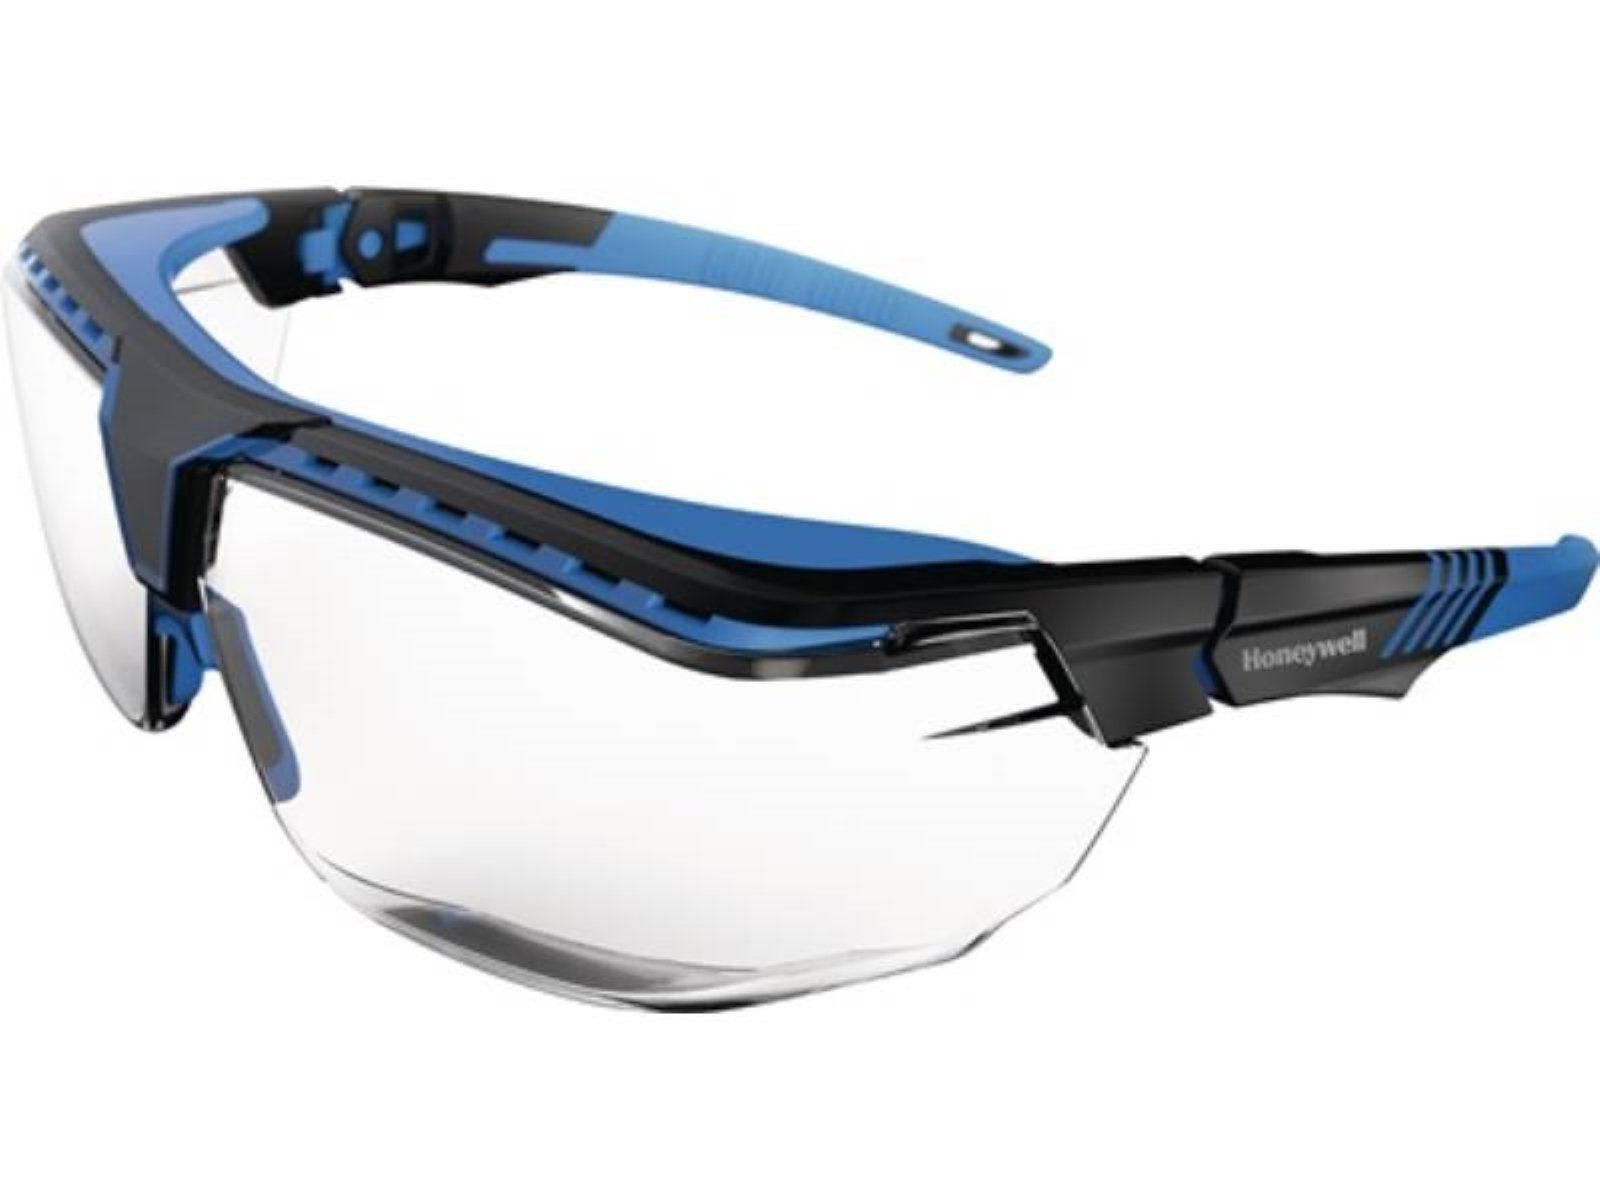 Bügel die Anti-Reflex Honeywell Arbeitsschutzbrille Avatar Schutzbrille schwarz-blau,Scheibe Ü OTG